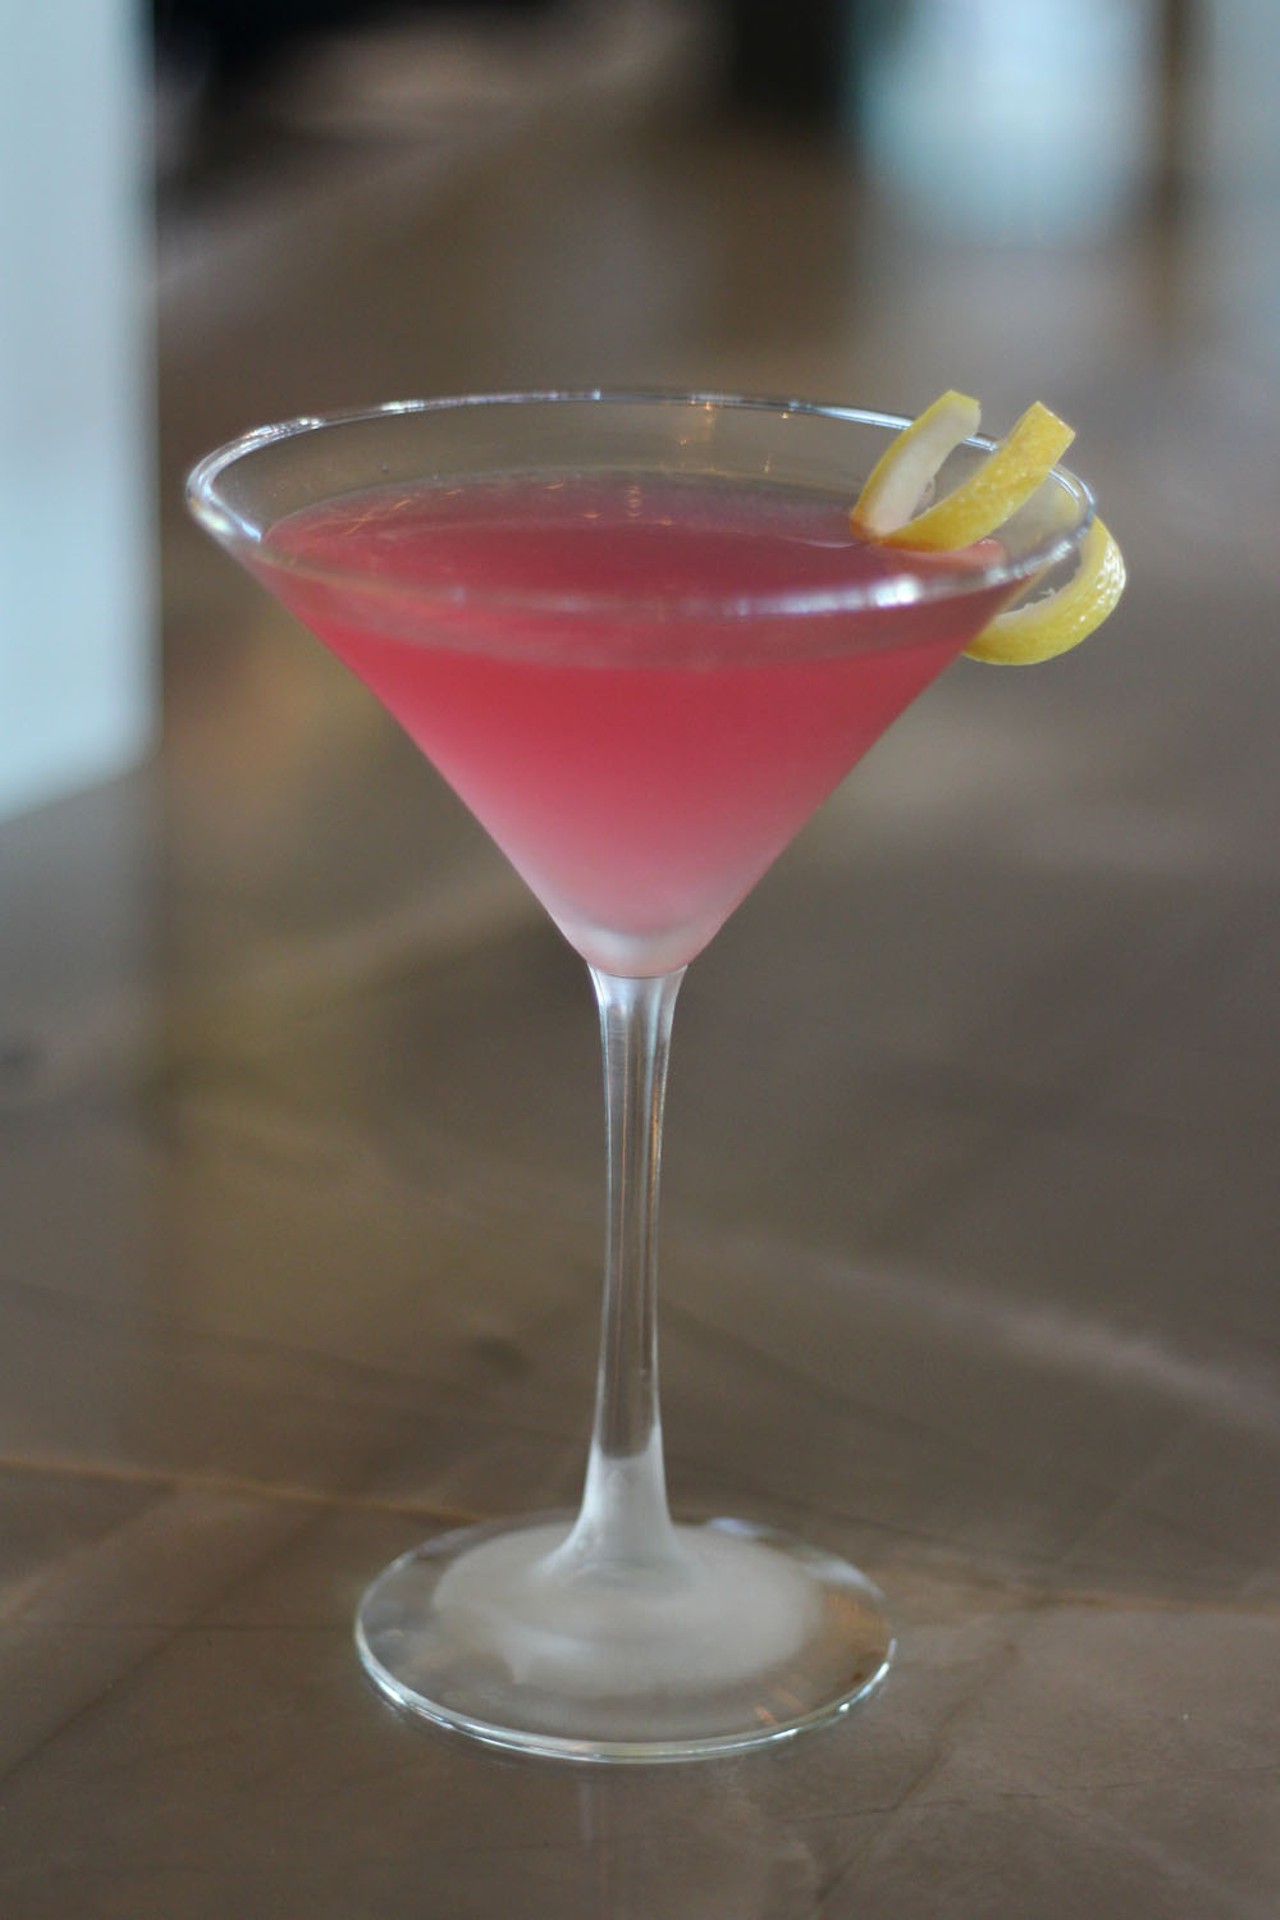 Pink martini